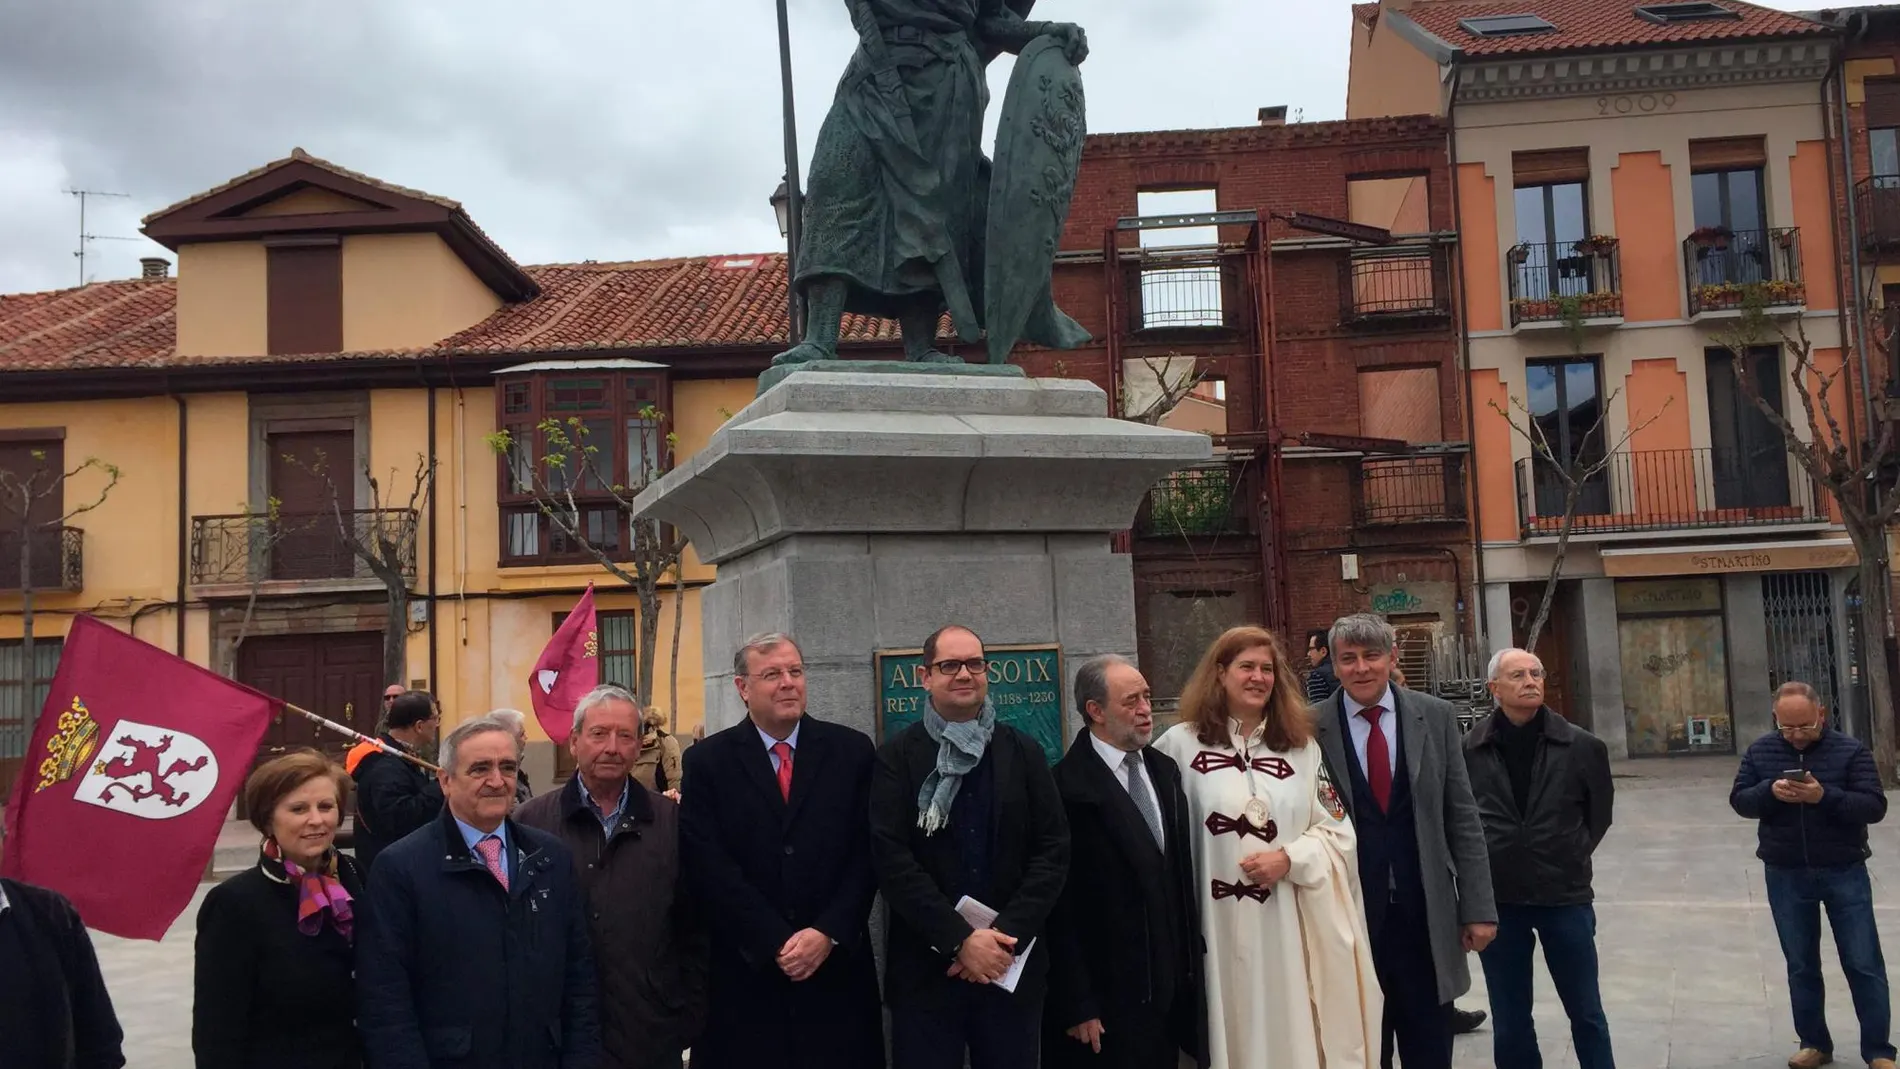 Antonio Silván y miembros de la corporación junto a la nueva estatua